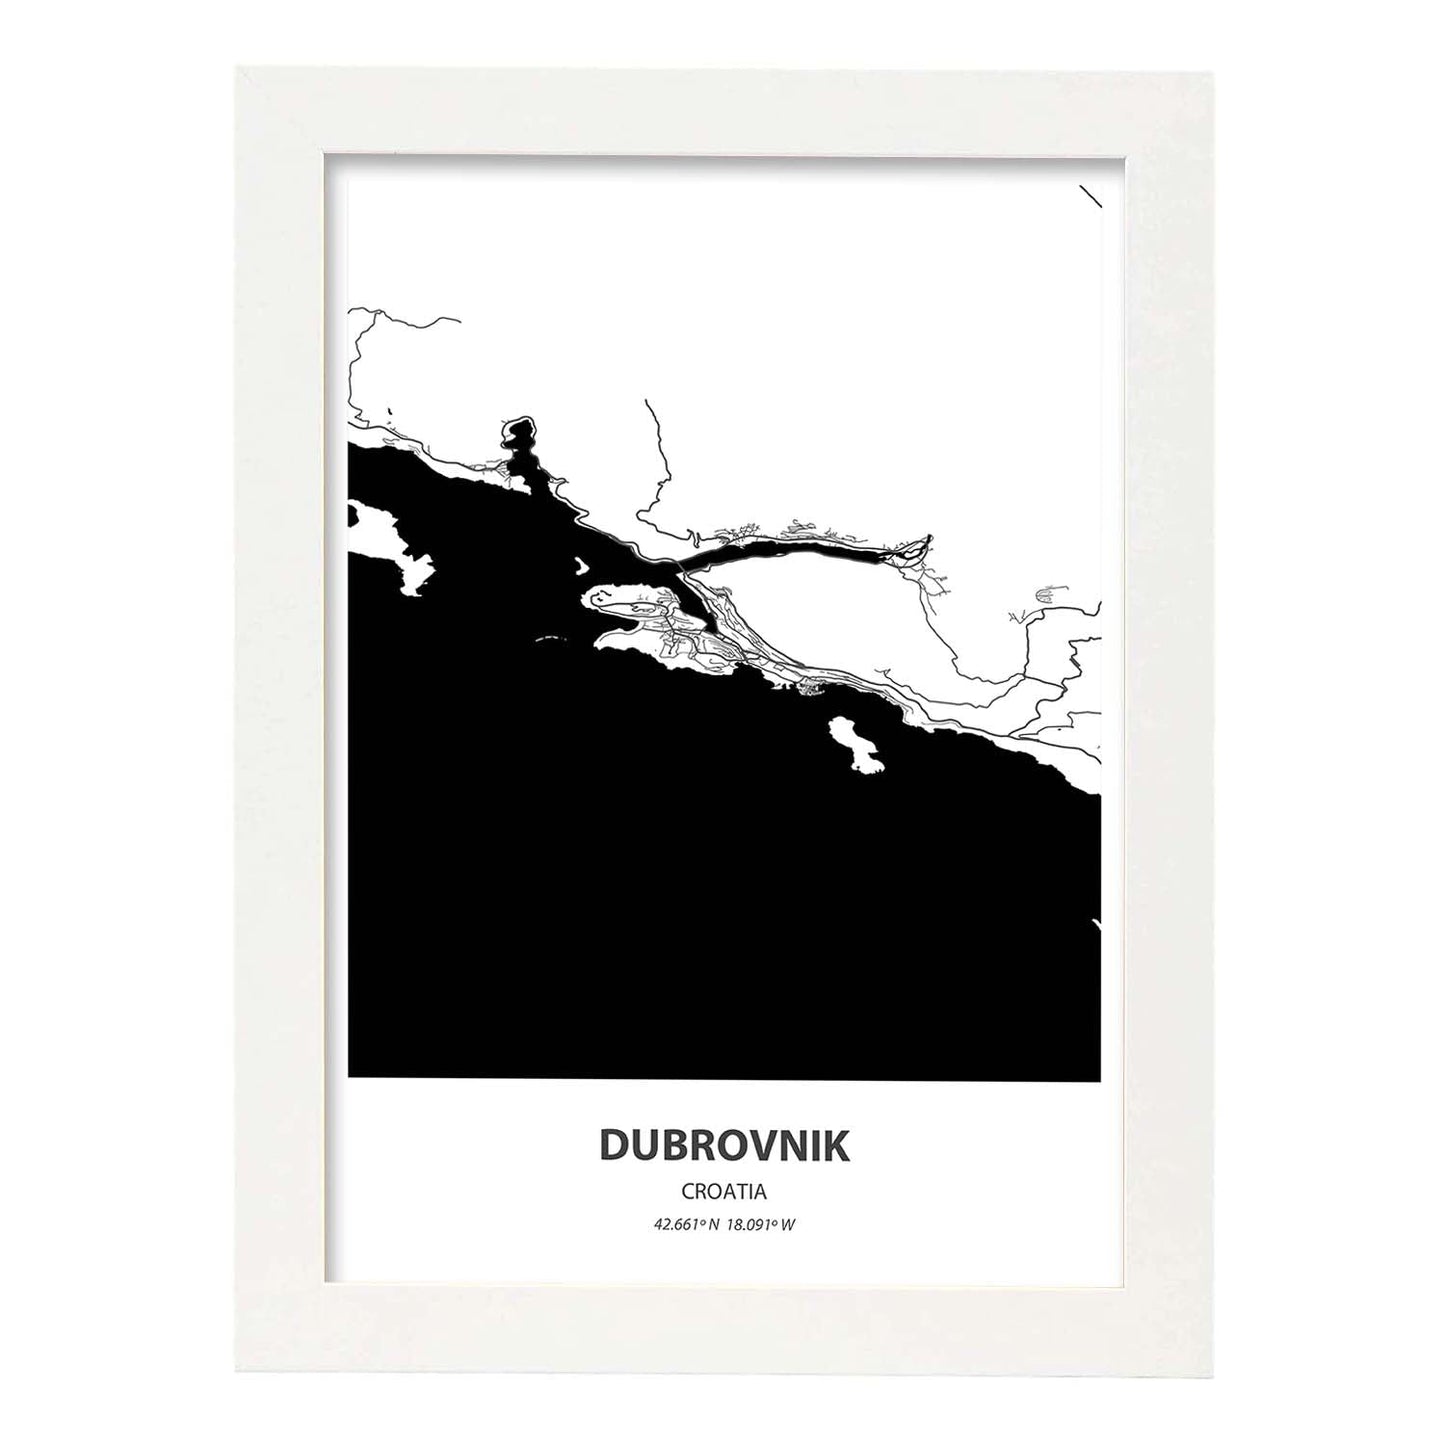 Poster con mapa de Dubrokniv - Croacia. Láminas de ciudades de Europa con mares y ríos en color negro.-Artwork-Nacnic-A3-Marco Blanco-Nacnic Estudio SL